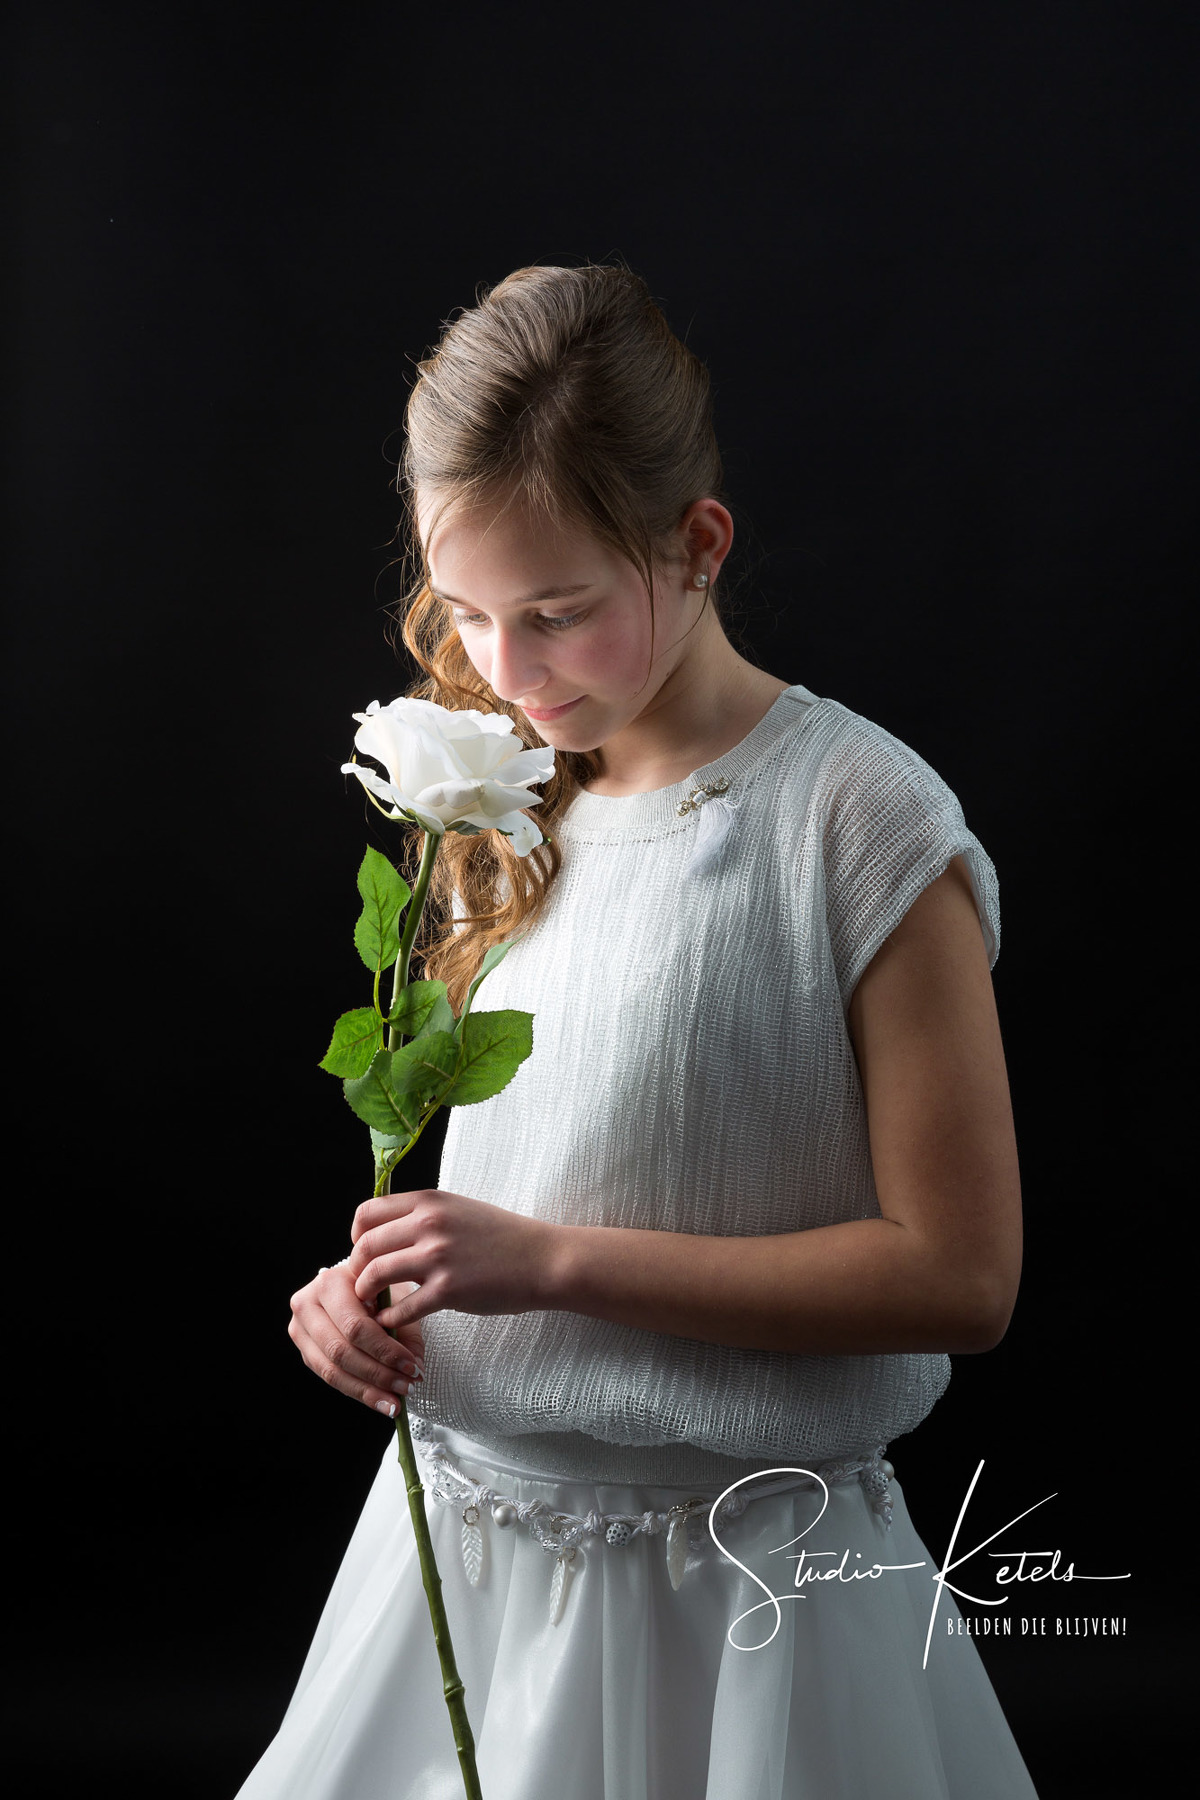 Communieportret van een meisje. Ze heeft een witte bloem in haar hand, en ruikt eraan. Portret door Studio Ketels